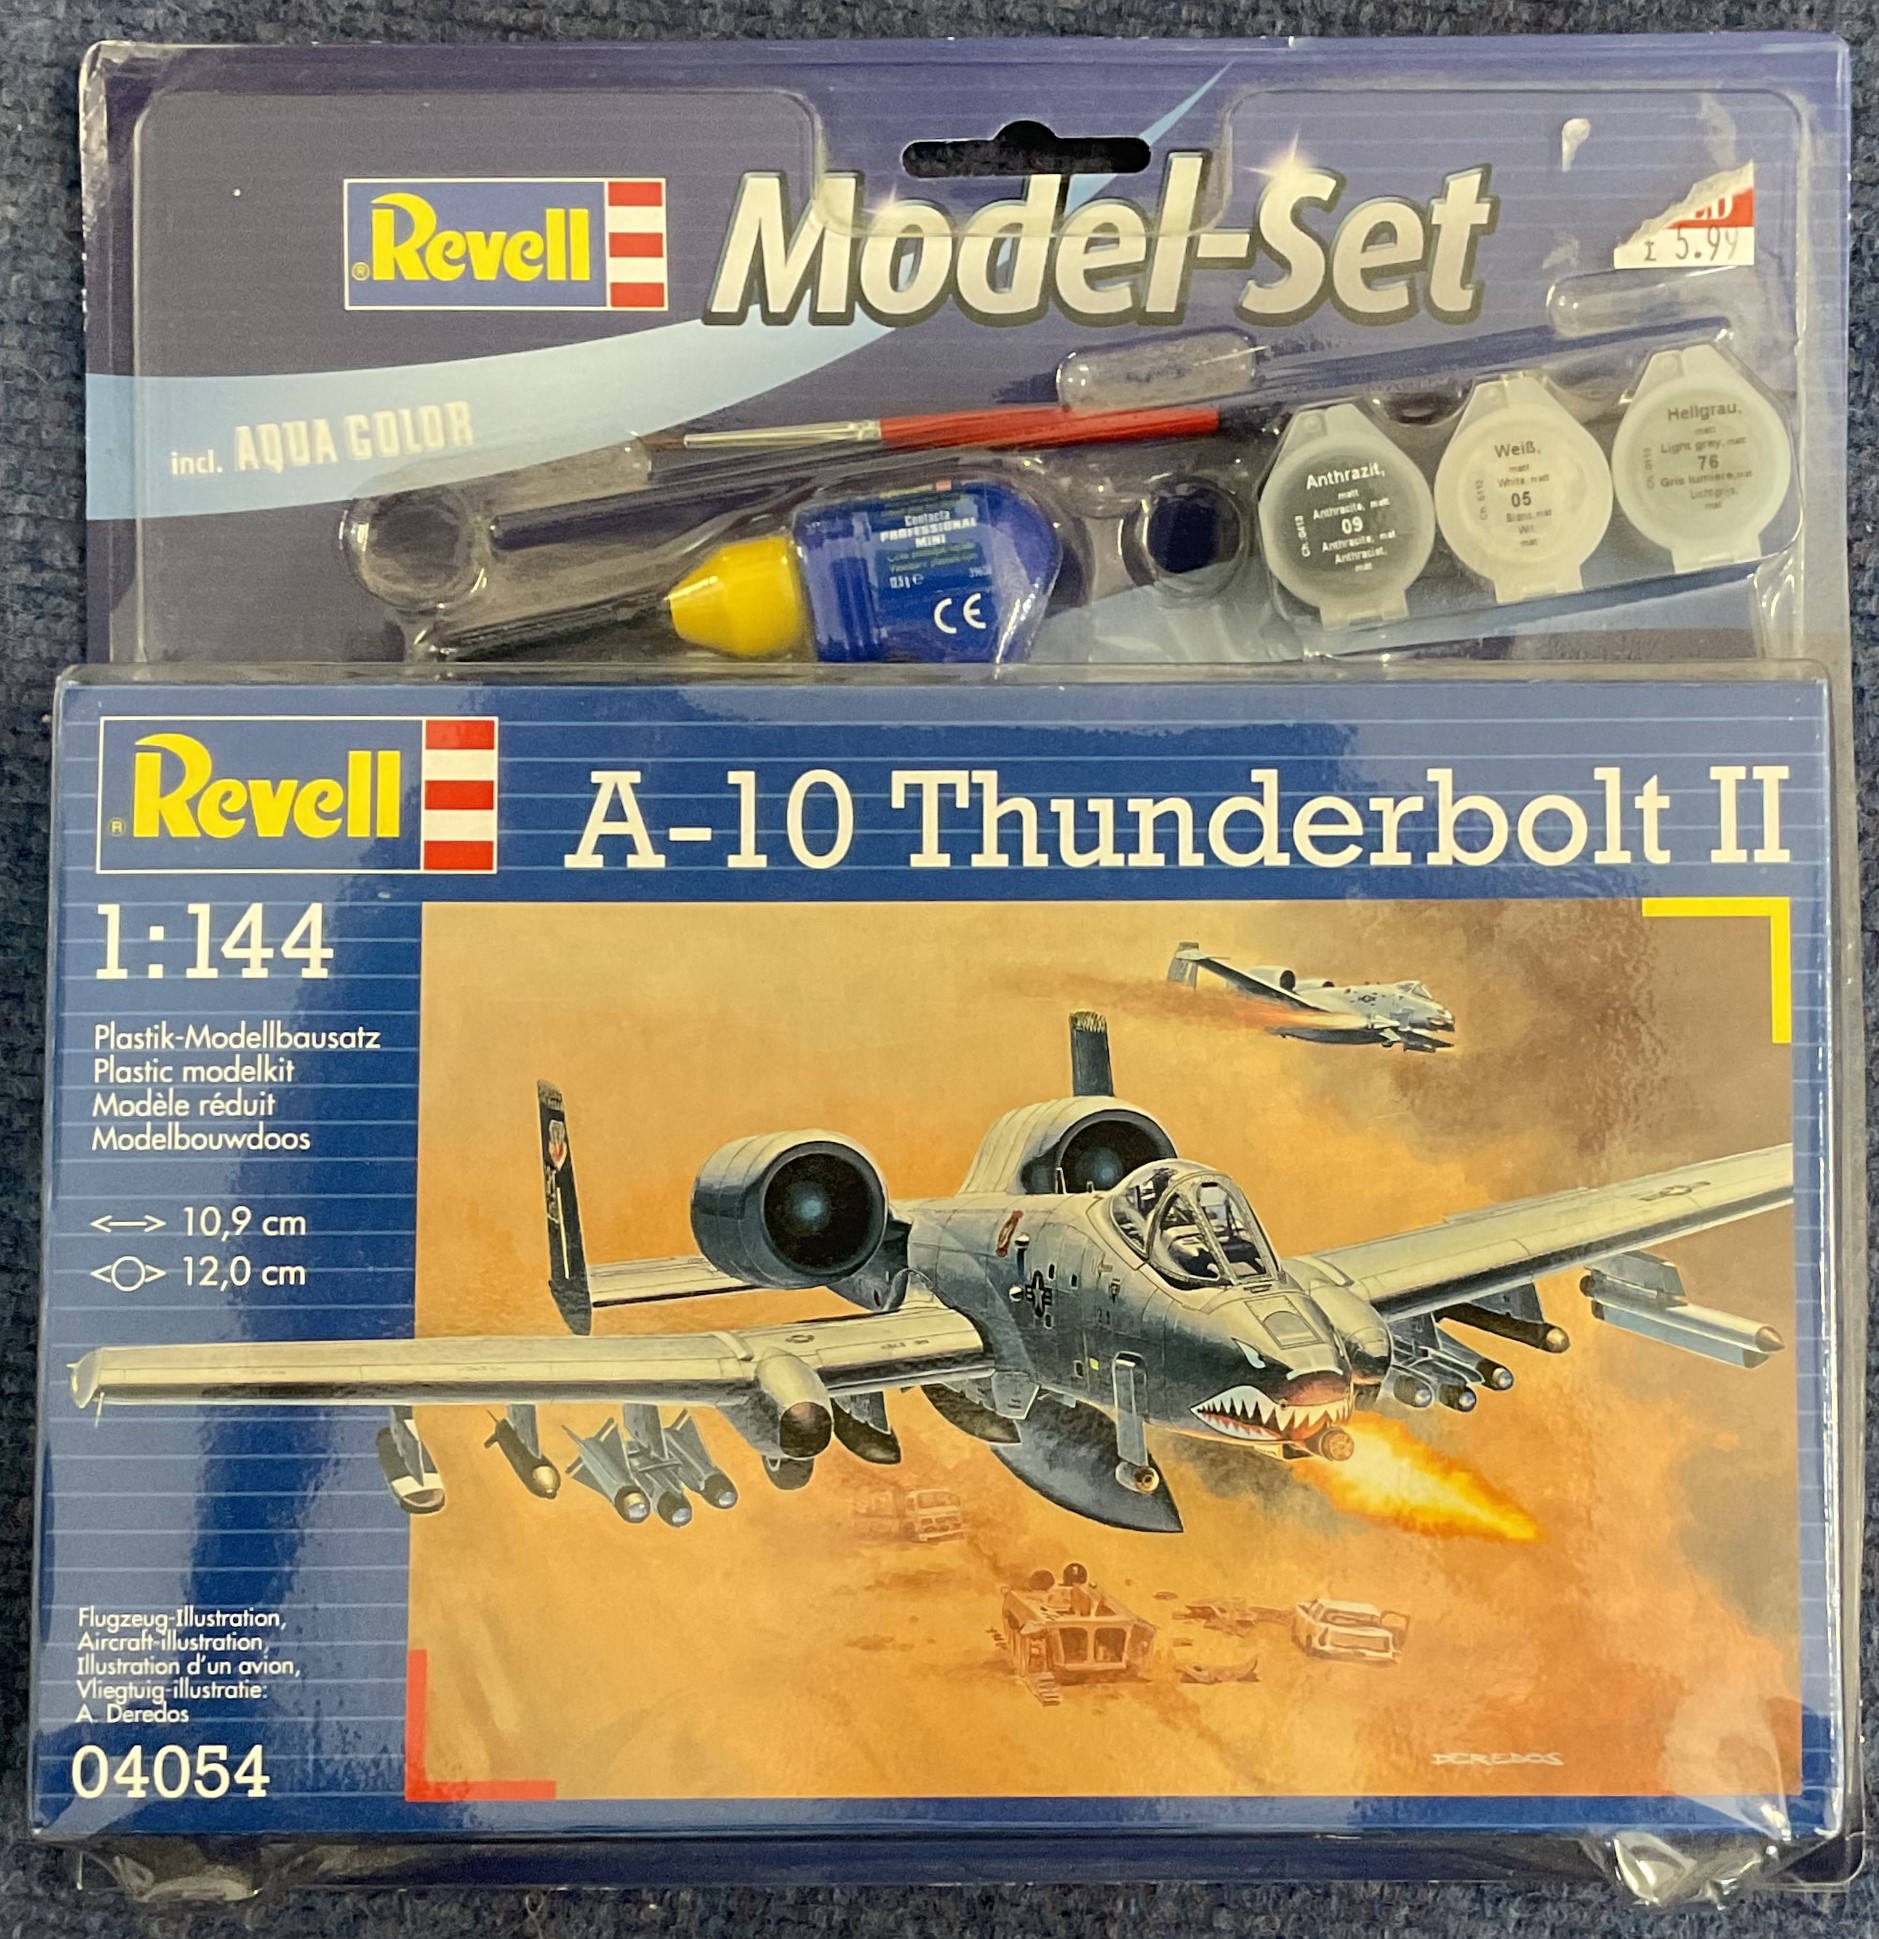 A 10 Thunderbolt II Model Set Plastic Model Kit (scale 1:144 Length 10.9 cm) by Revell 2010 unopened